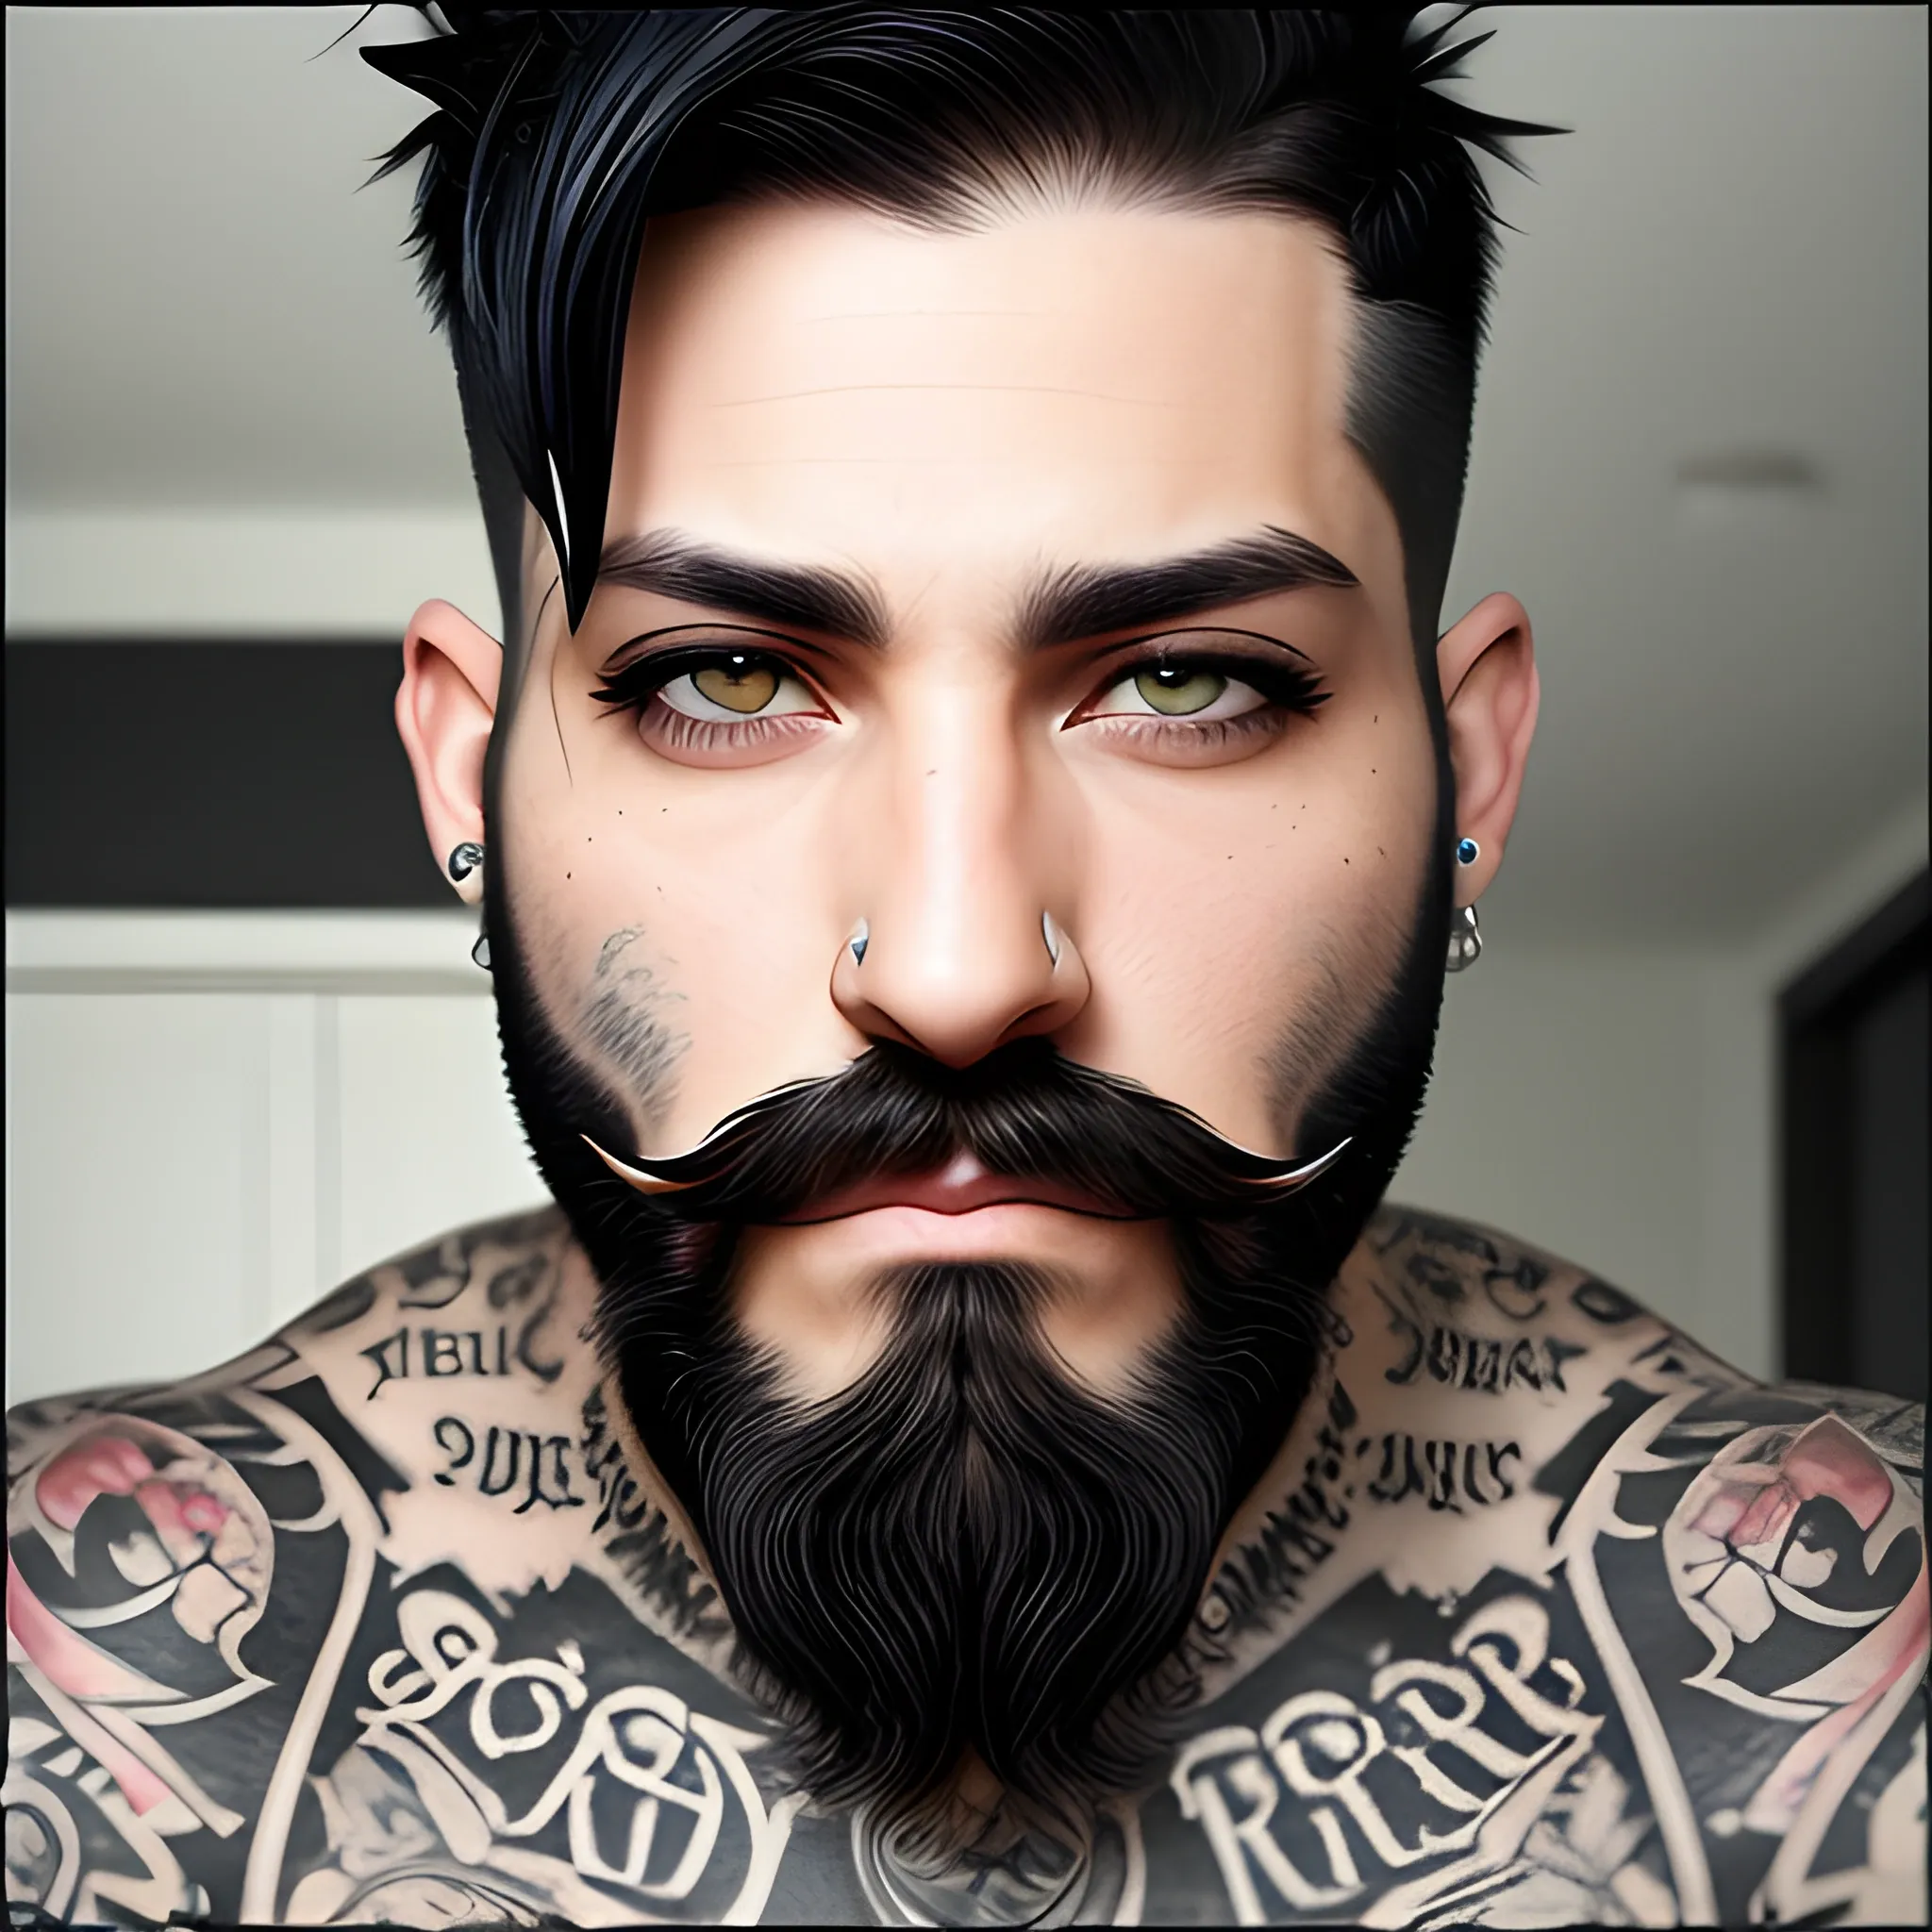 black short hair, black beard, tattoos, piercings, grey eyes 